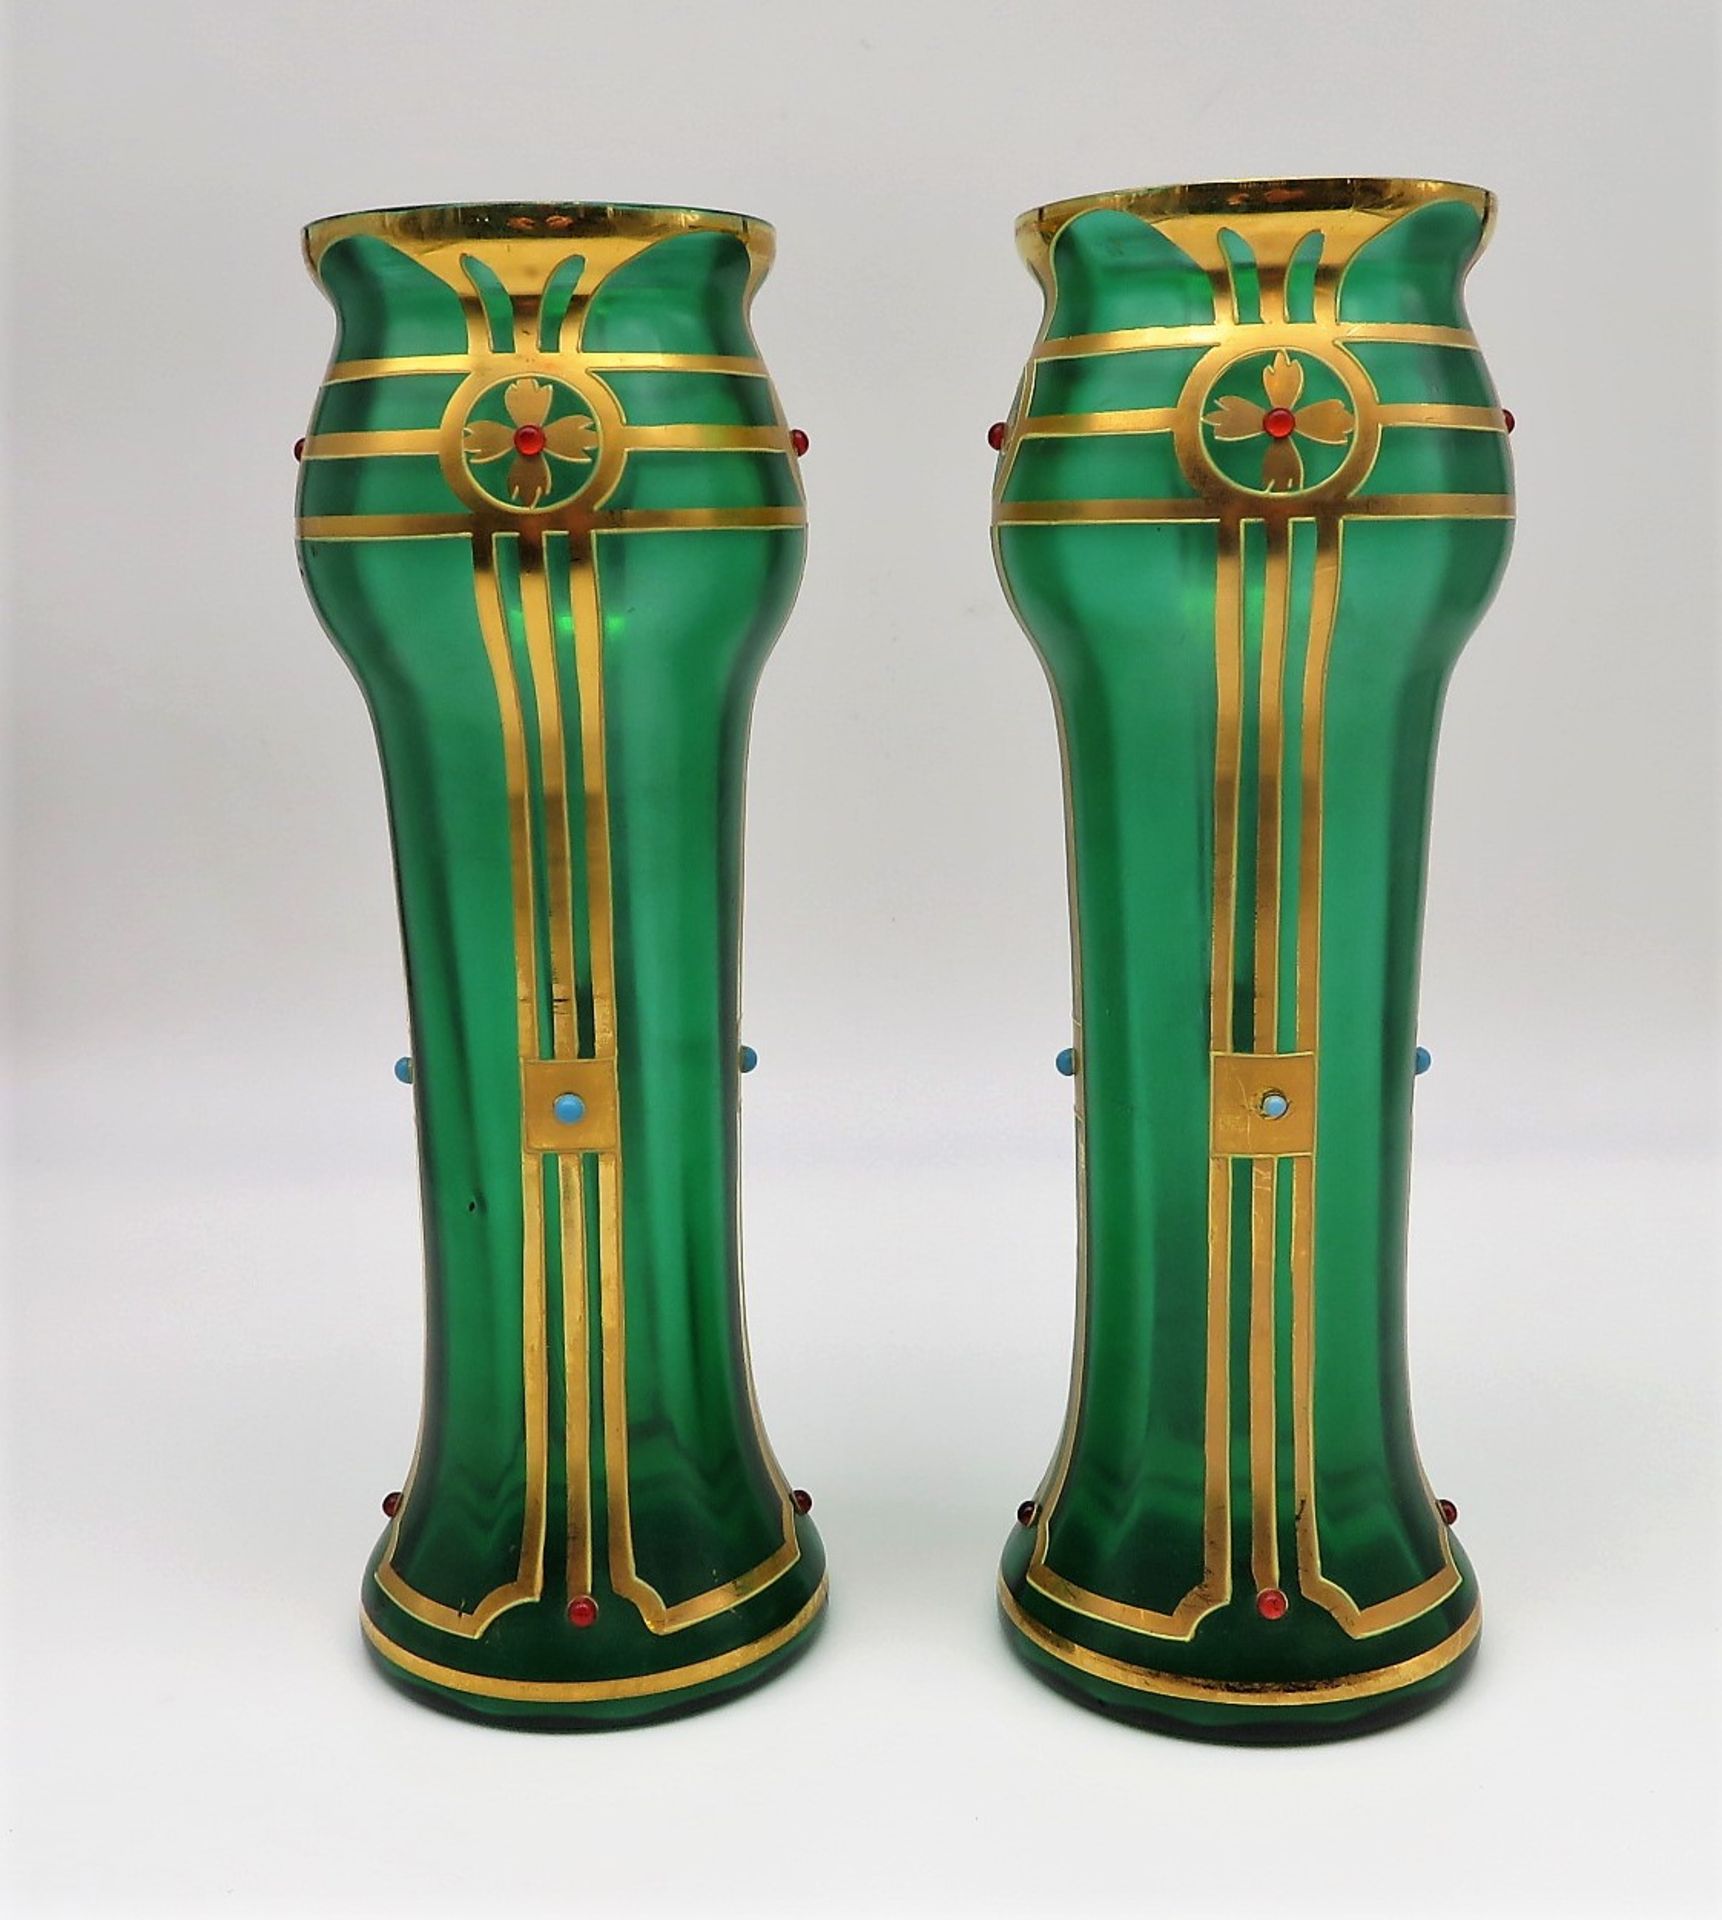 2 Vasen, Jugendstil, um 1900, grünes glas mit feiner Goldmalerei und aufgesetzten Glasperlen, h 27,